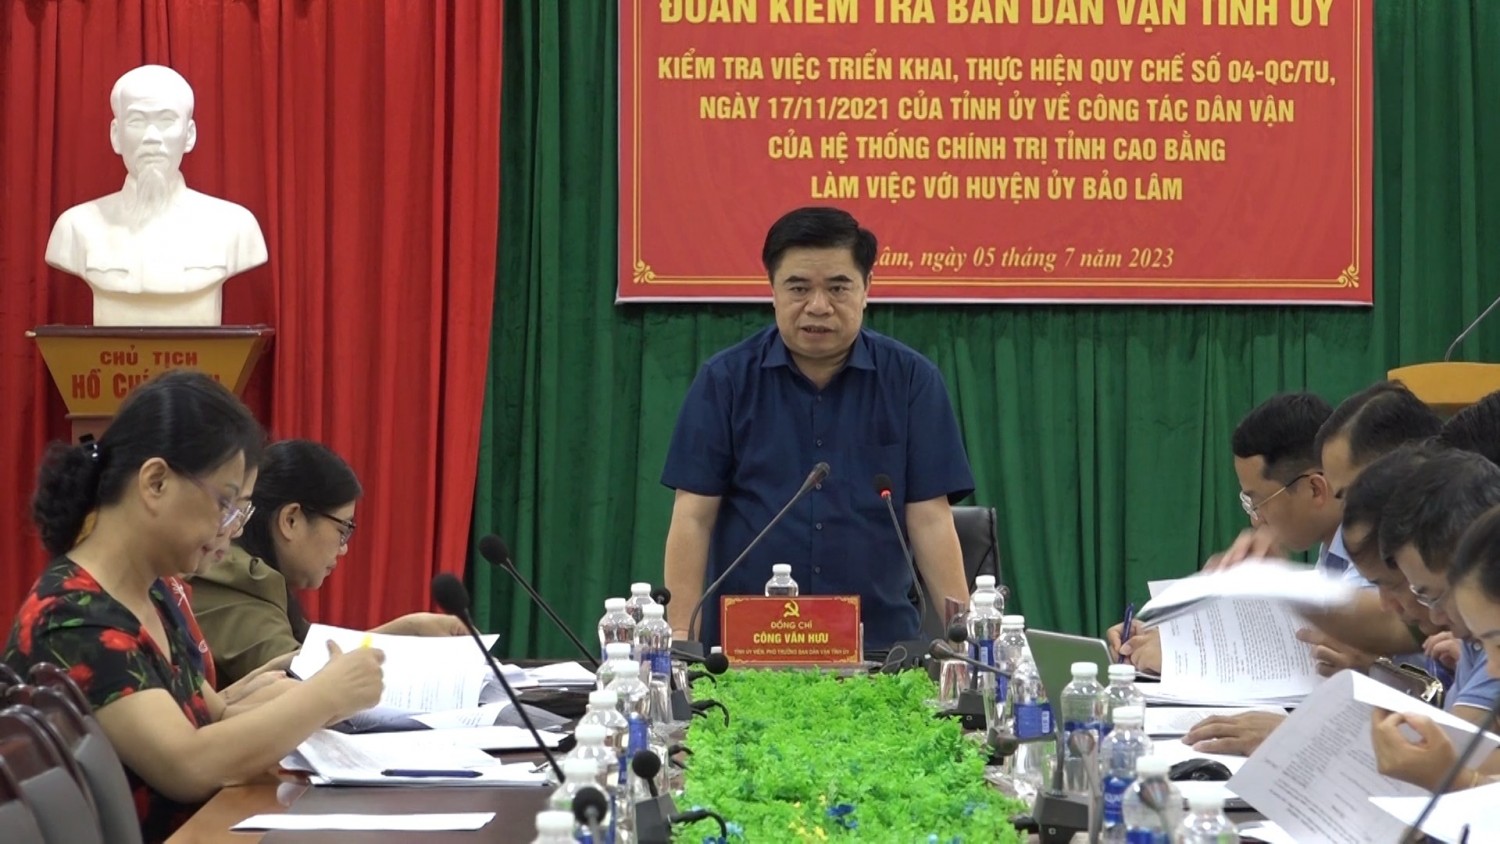 Ban Dân vận Tỉnh uỷ kiểm tra Quy chế công tác Dân vận của hệ thống chính trị tỉnh Cao Bằng (Quy chế 04) tại huyện Bảo Lâm.